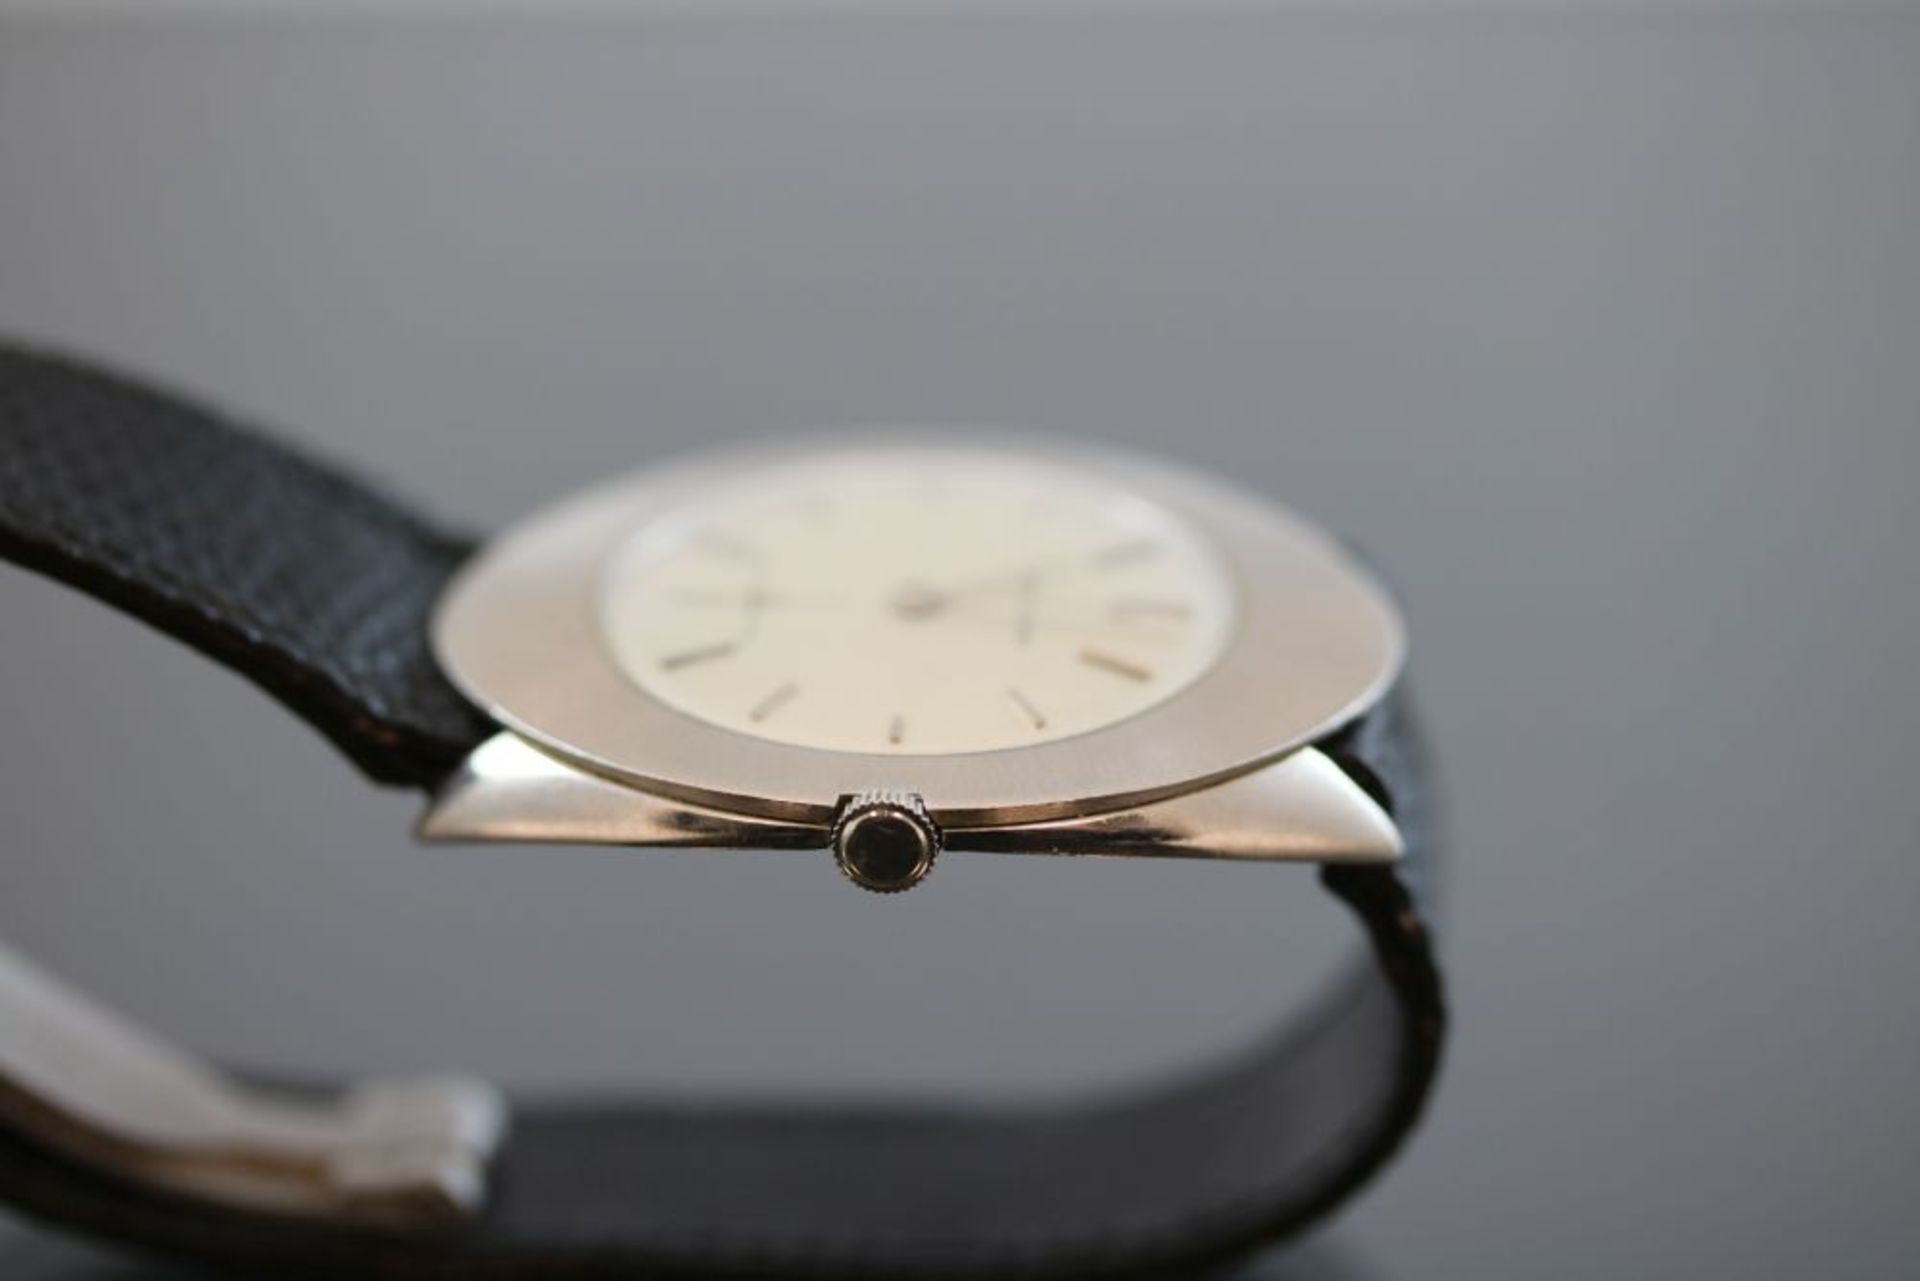 Audemar Piguet ArmbanduhrWerk: HandaufzugBand: Schwarzes LederbandFunktion: SekundenanzeigeGehäuse - Bild 3 aus 3